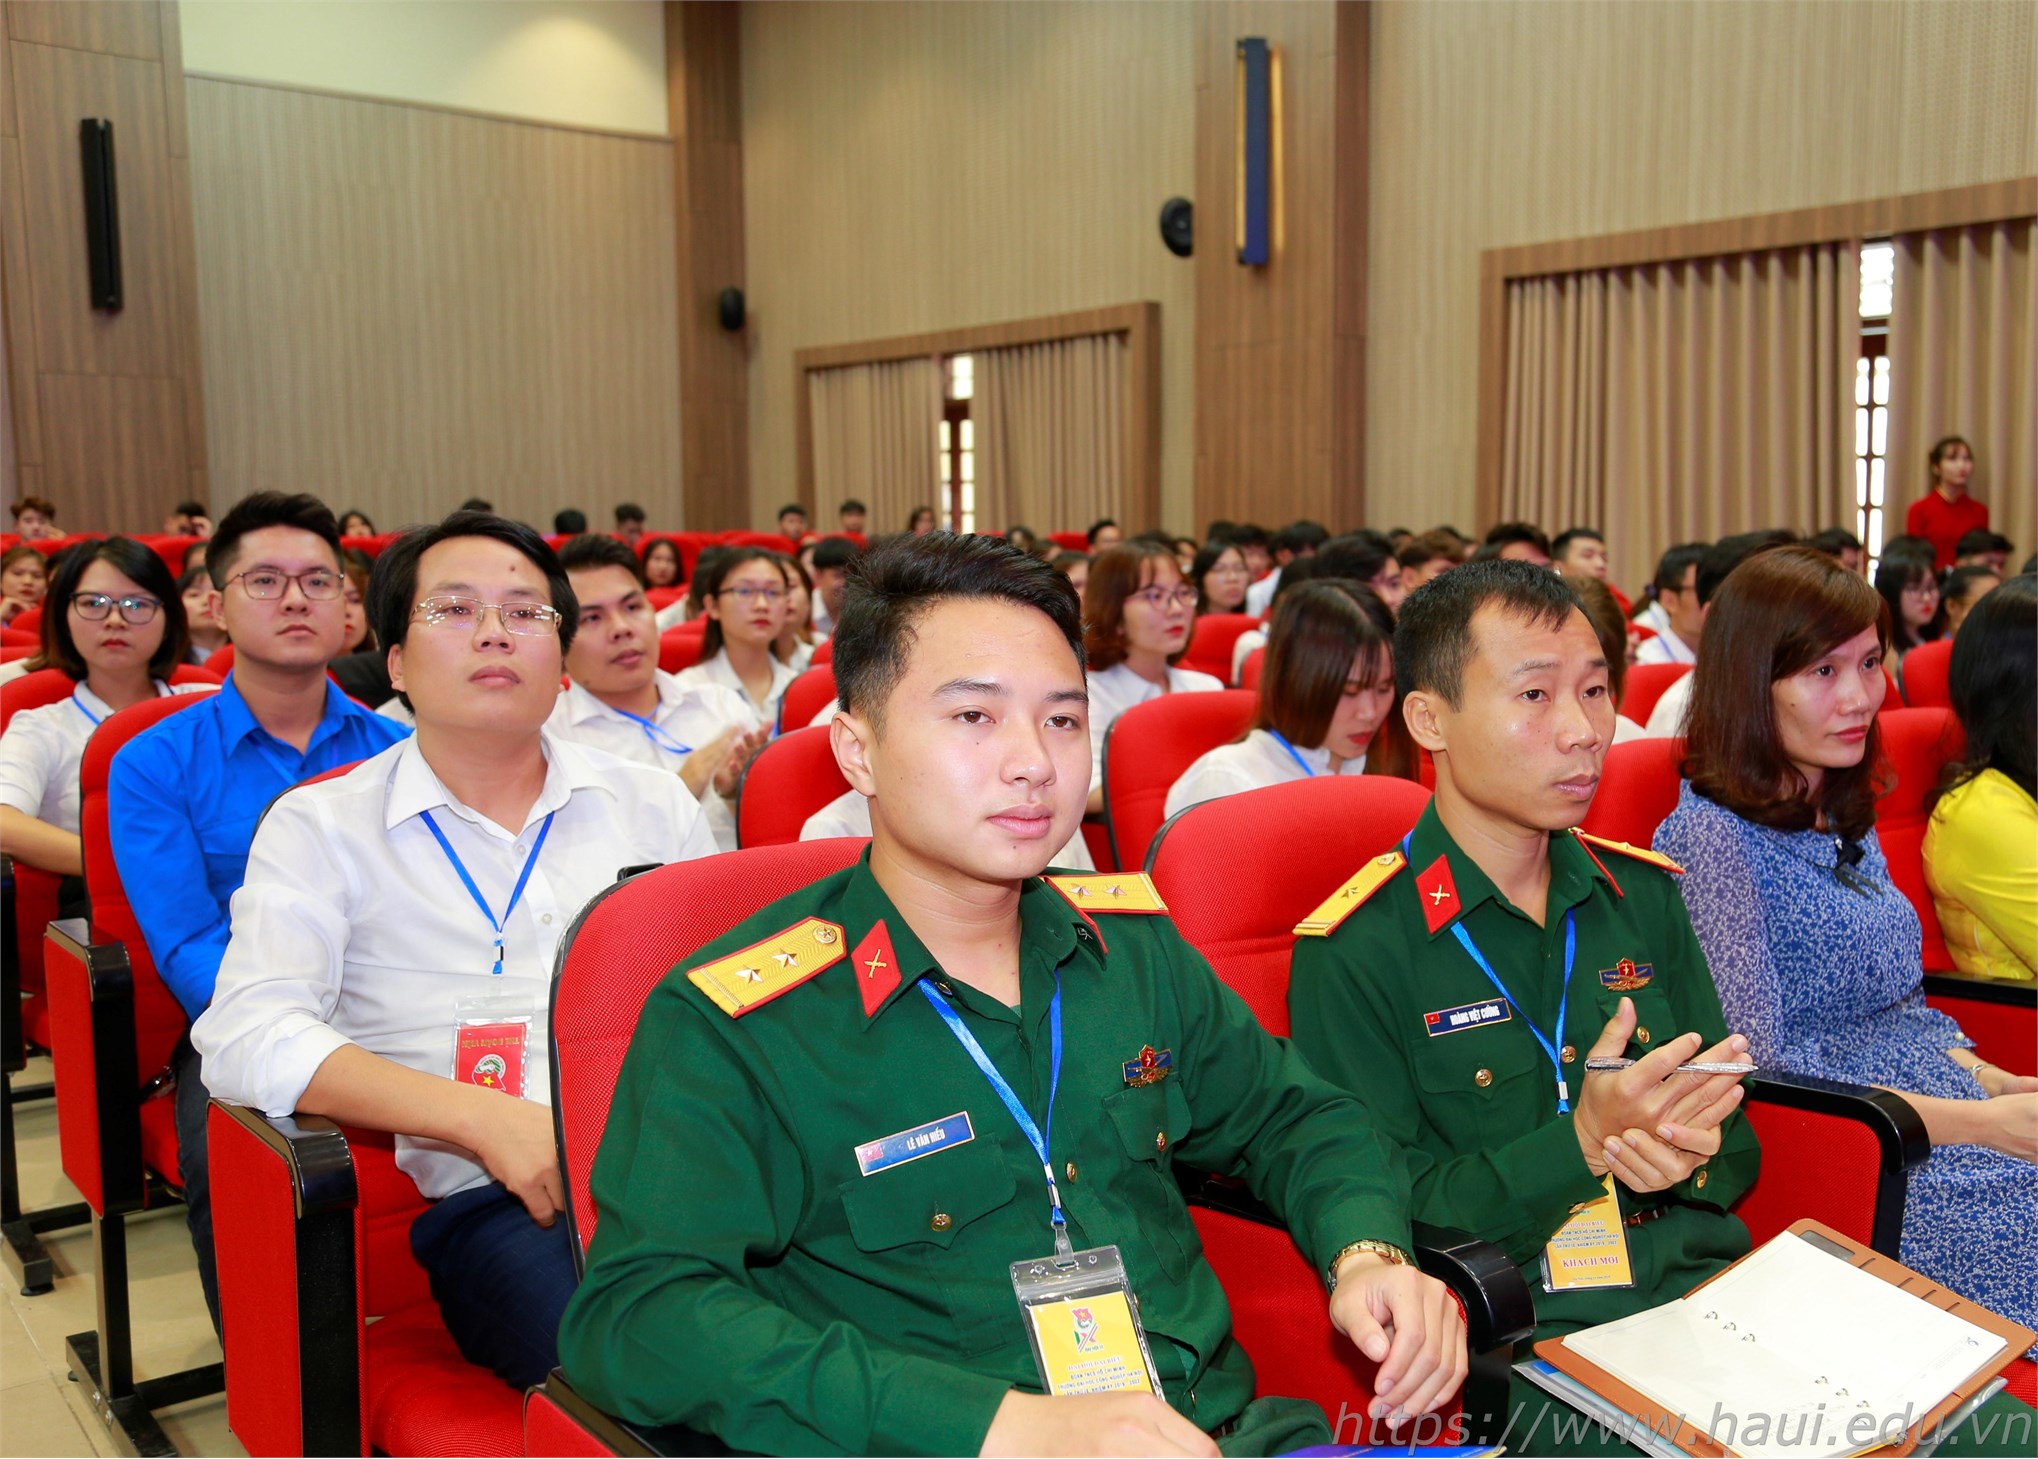 Đại hội đại biểu Đoàn TNCS Hồ Chí Minh trường Đại học Công nghiệp Hà Nội lần thứ IX, nhiệm kỳ 2019 - 2022